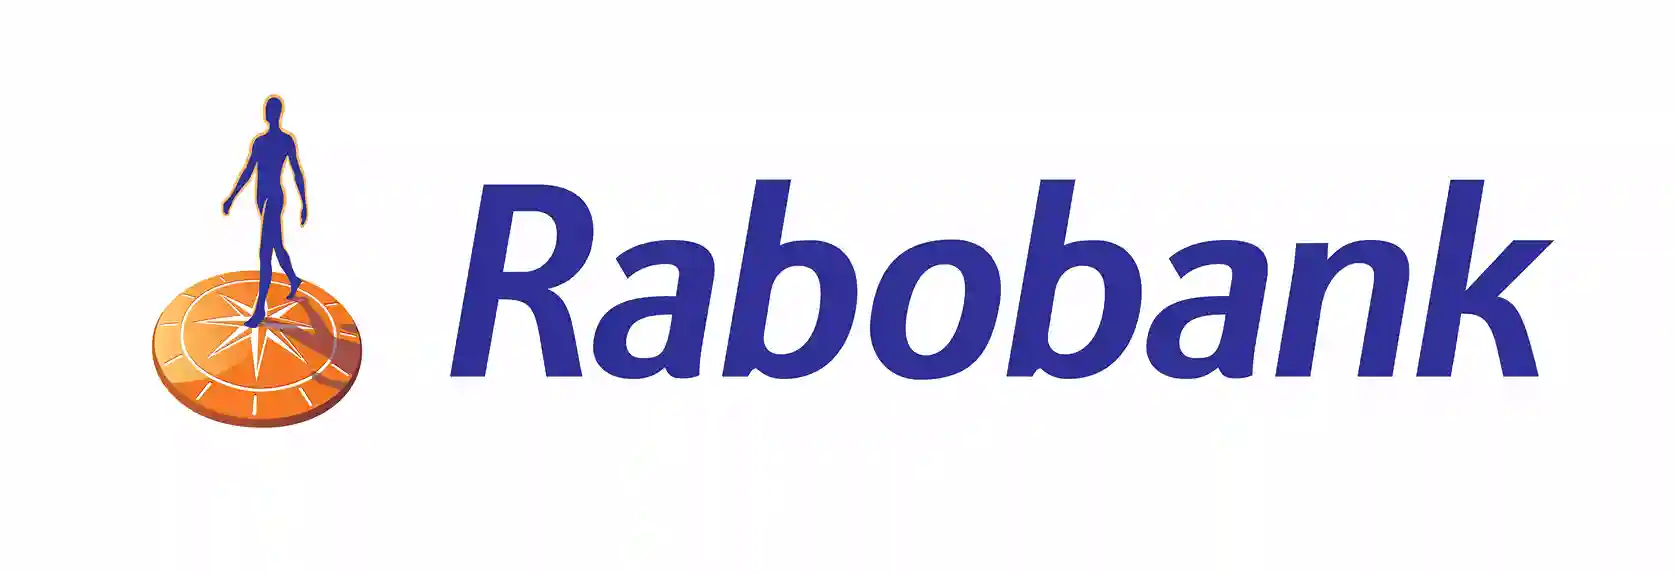 freecompress-Rabobank-150x50